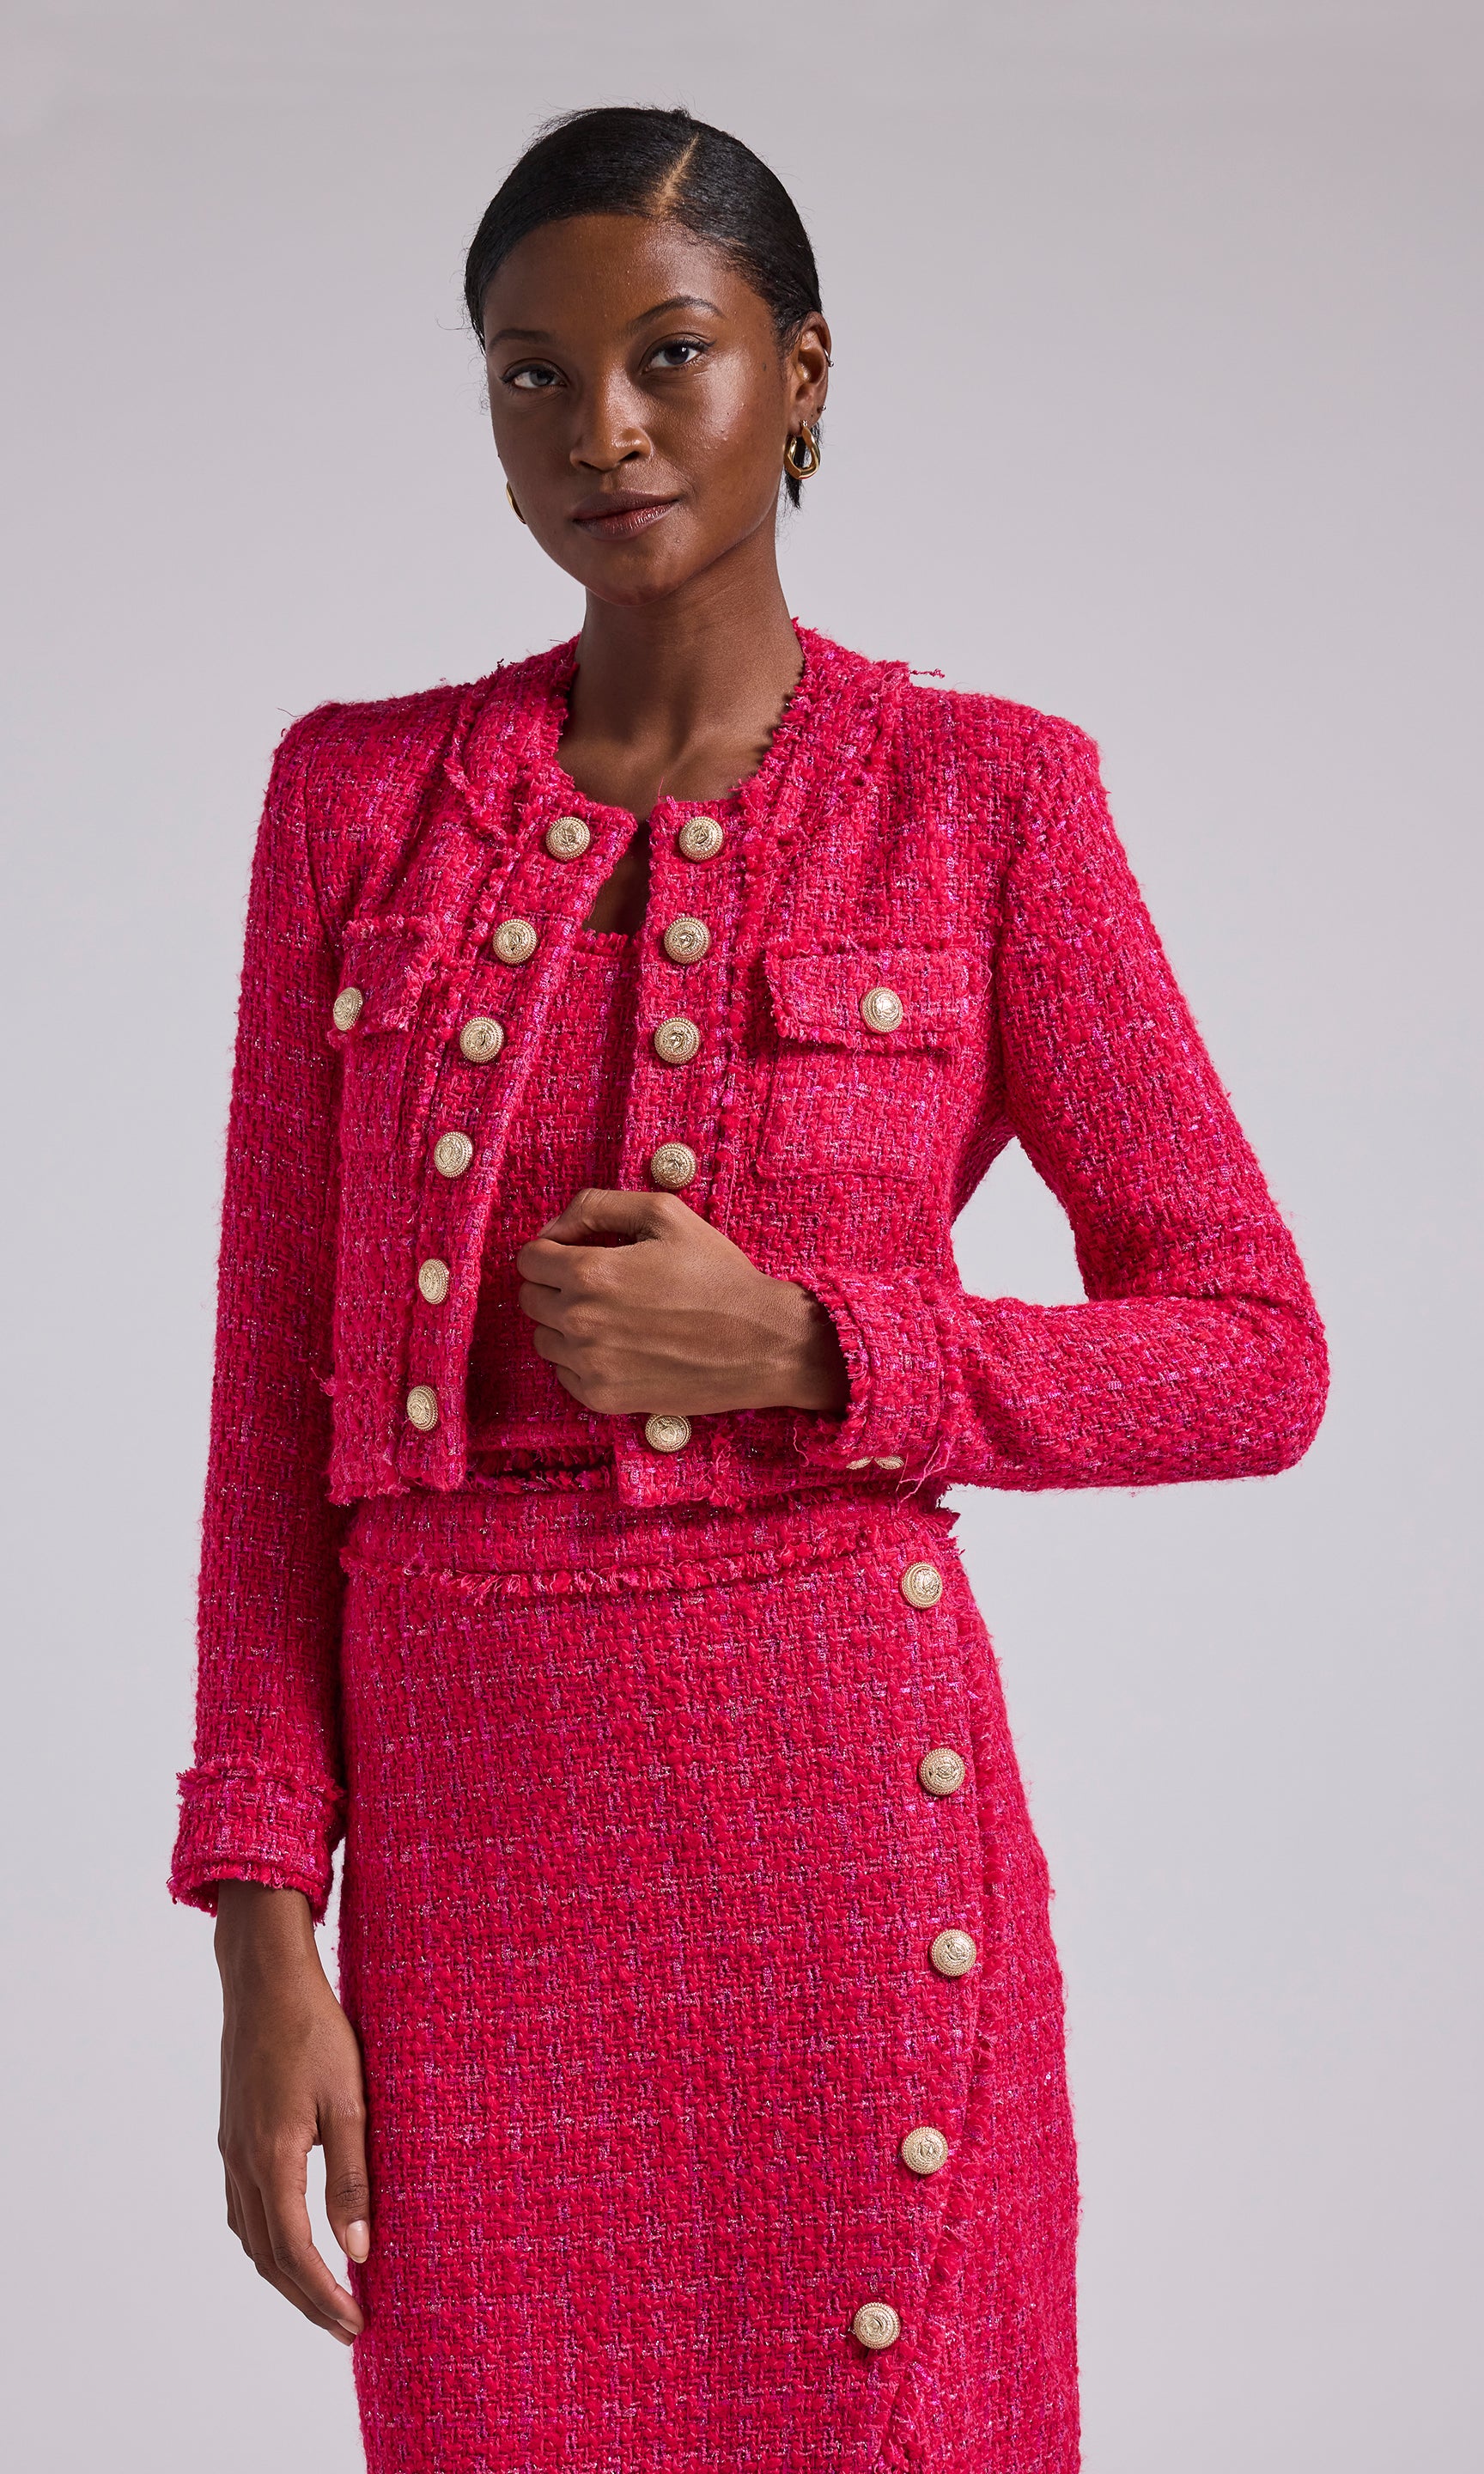 Pink Sequin Jackets Women, Channel Pink Jacket Women